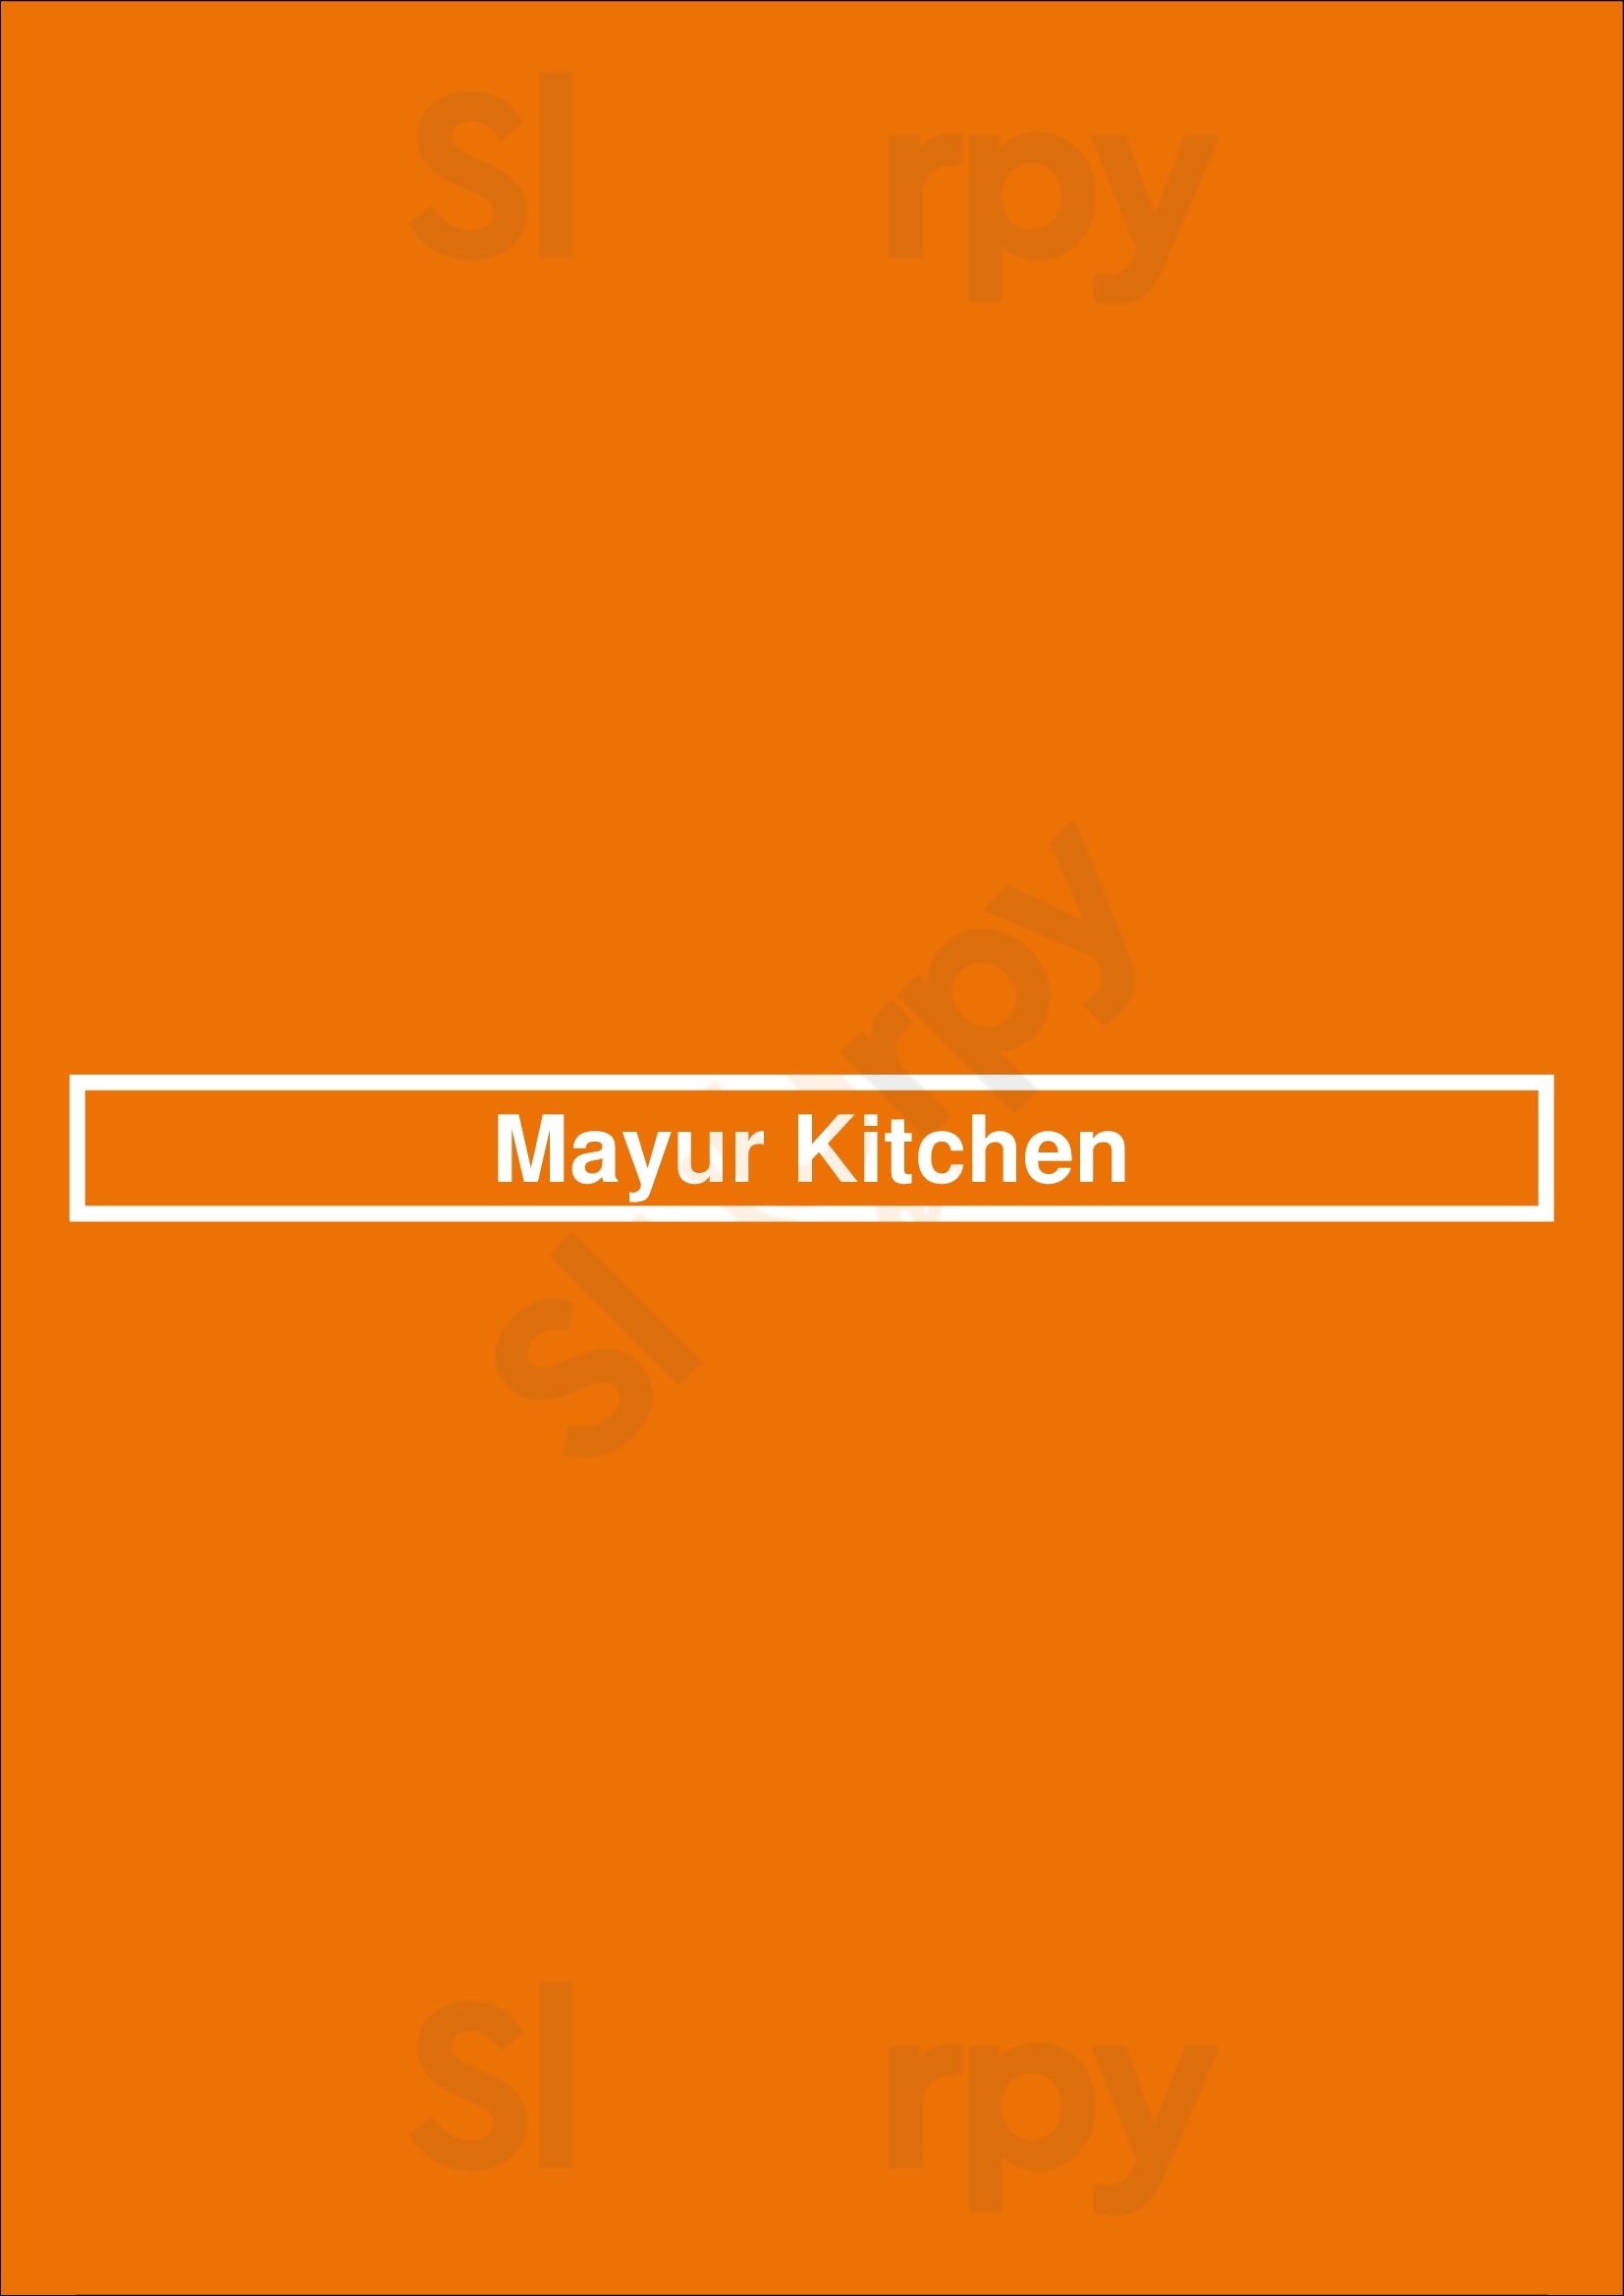 Mayur Kitchen Zwolle Menu - 1